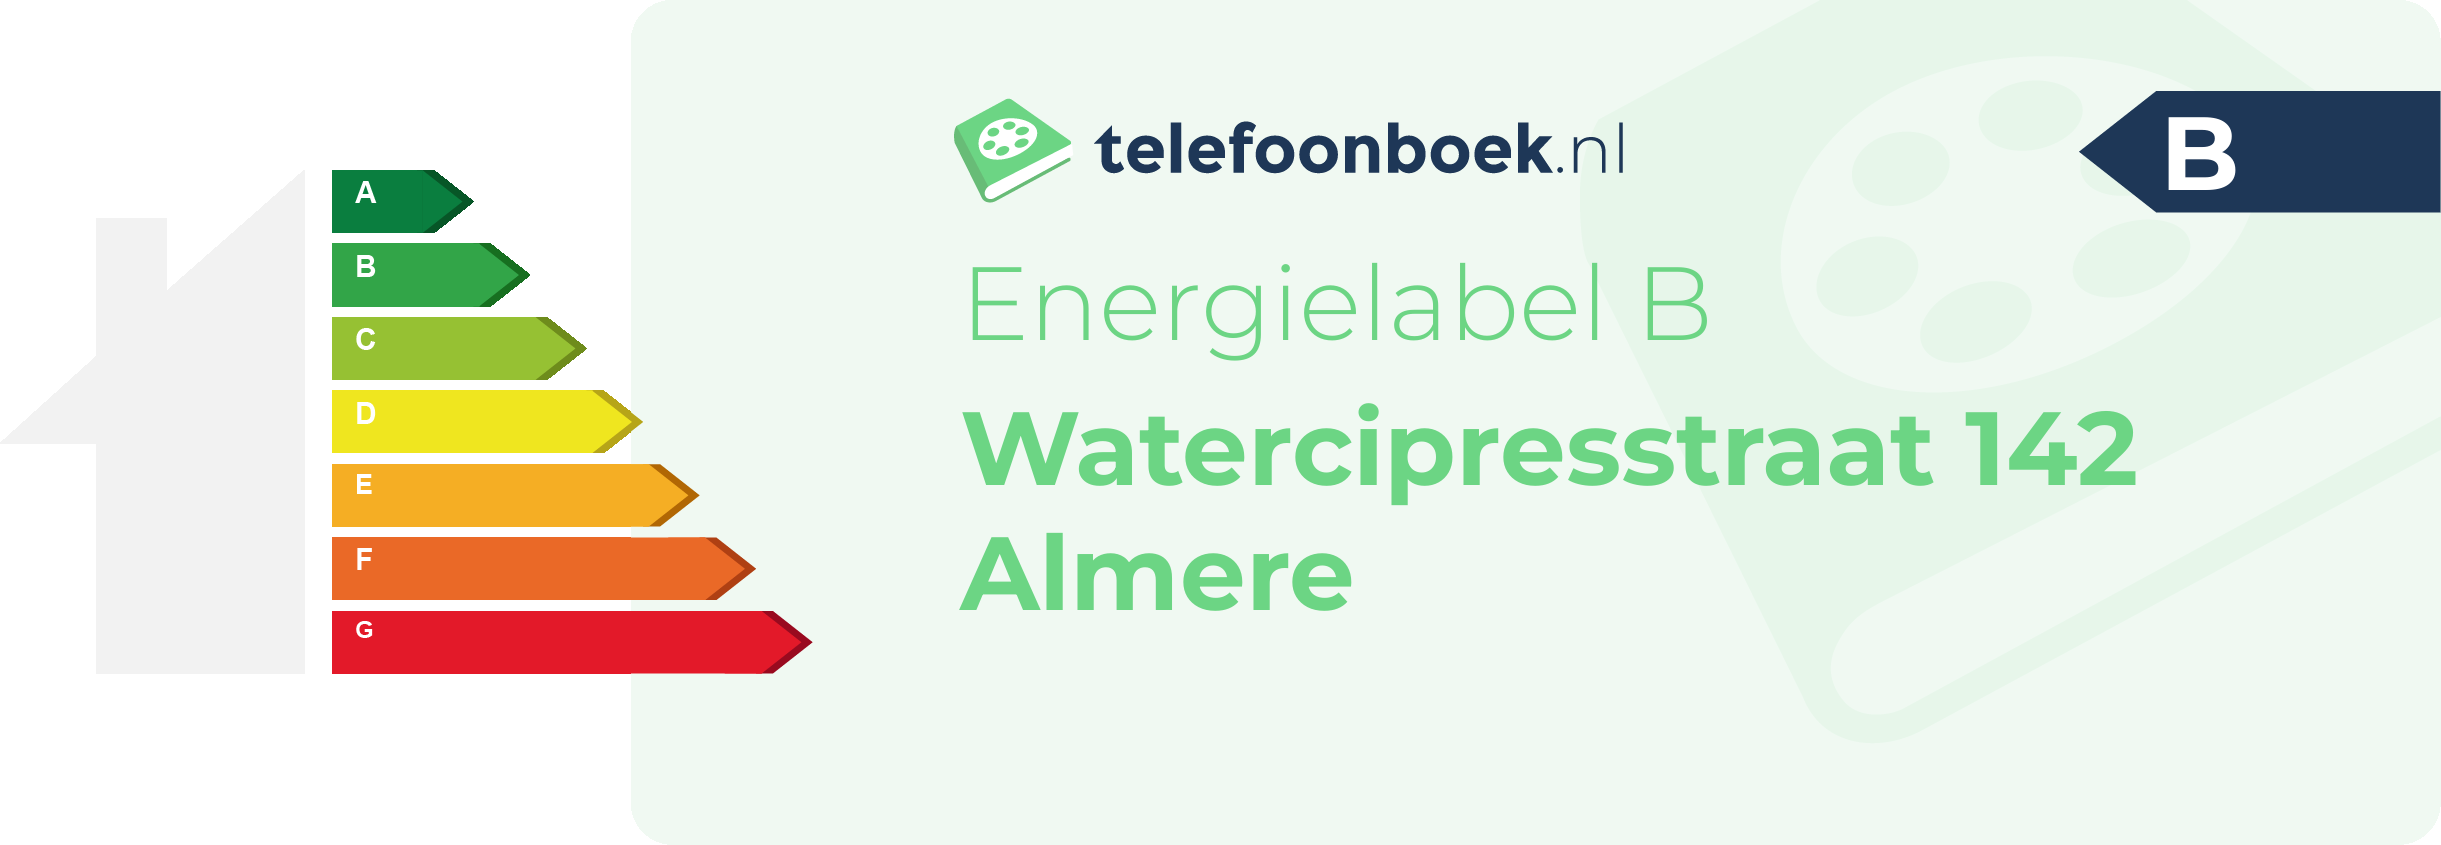 Energielabel Watercipresstraat 142 Almere